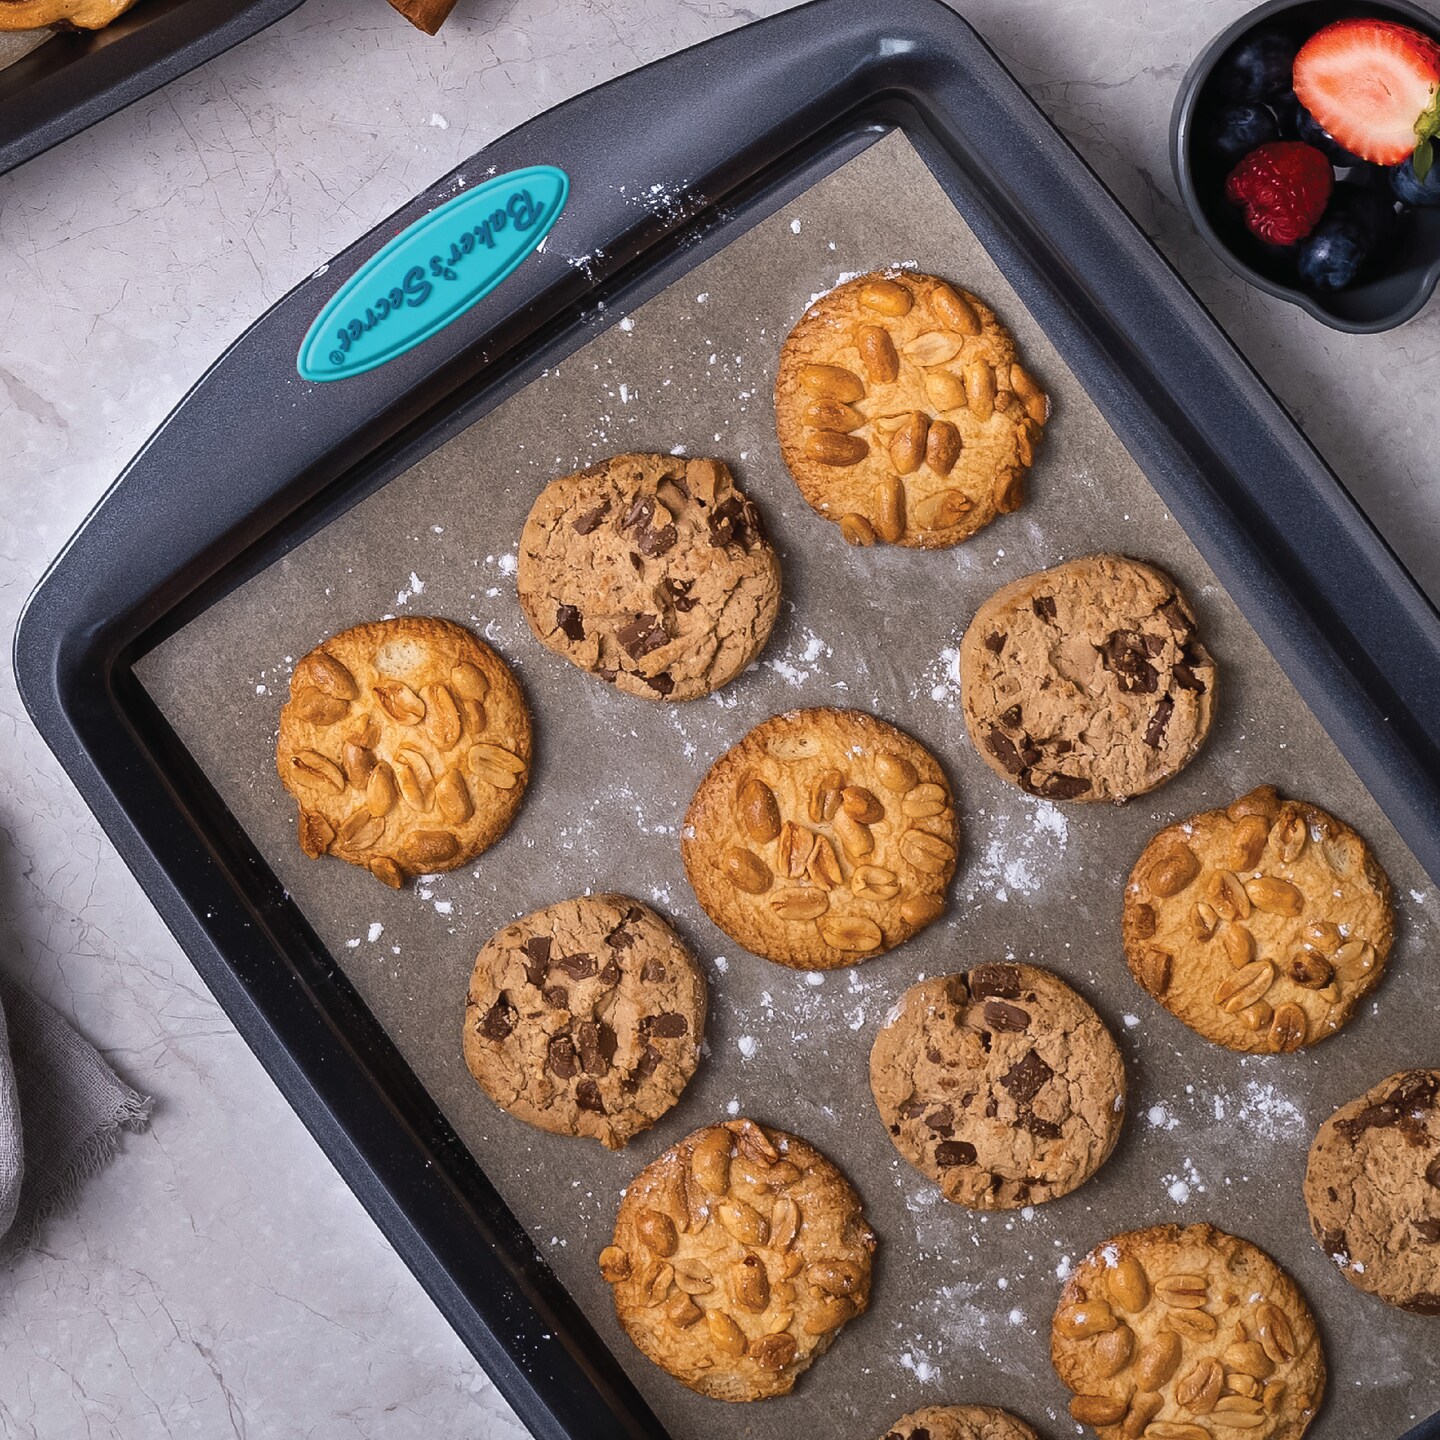 Baker's Secret Baking sheets for Oven - Bakeware Set of 3 Cookie